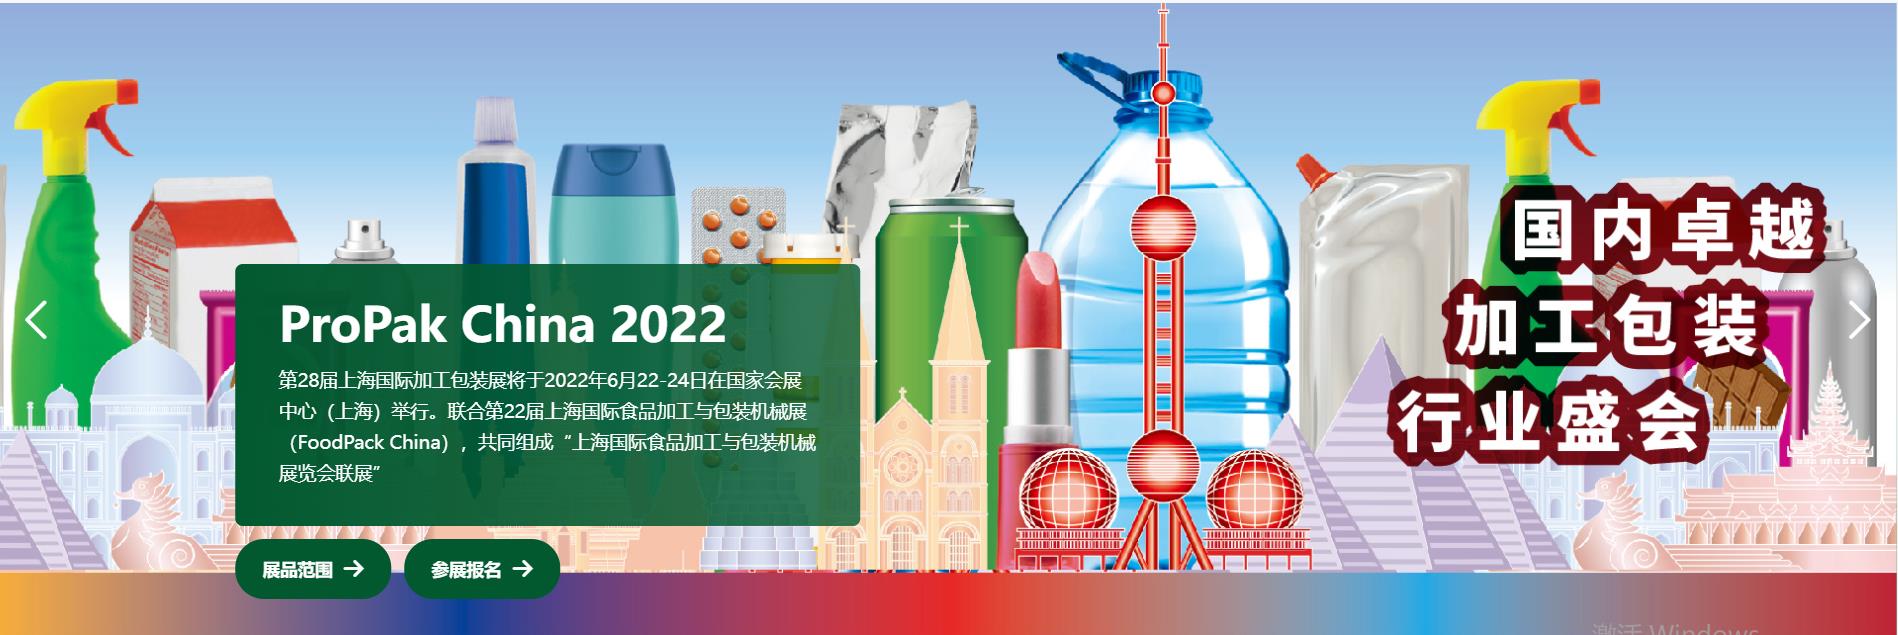 2018年国际食品展 propak 上海propak2022食品加工包装机械博览会